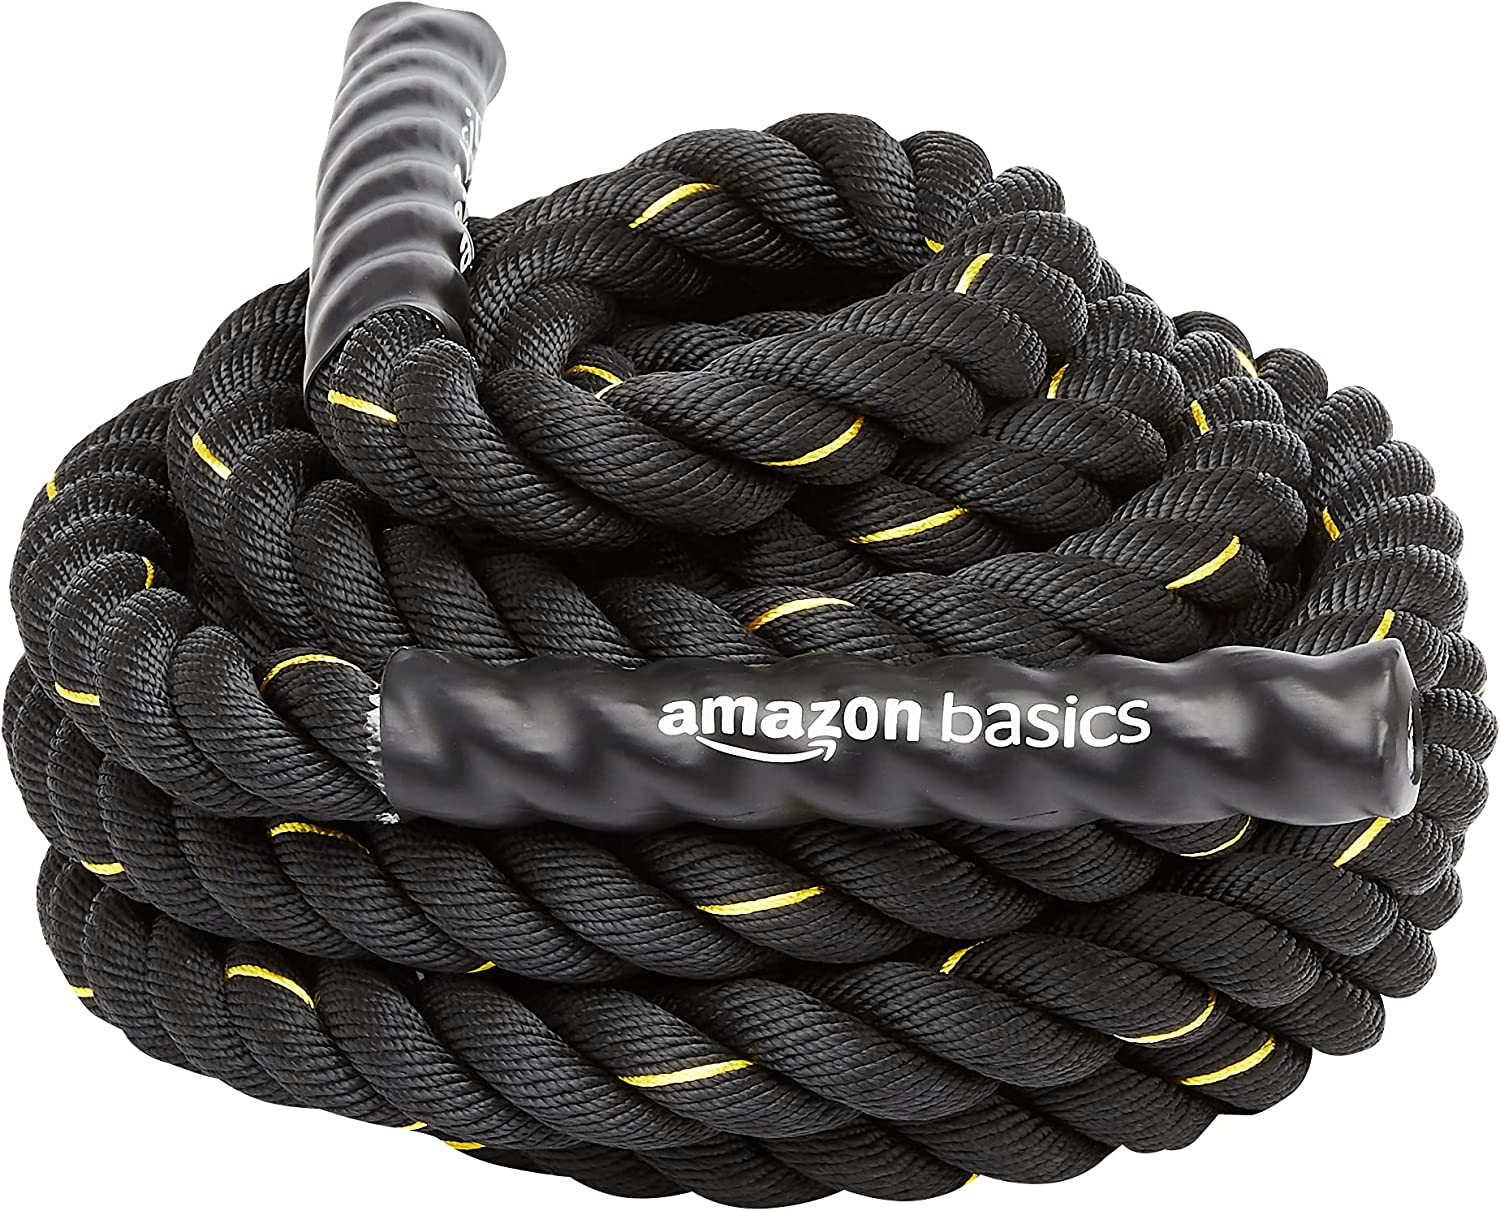 amazon basic battle rope on white background